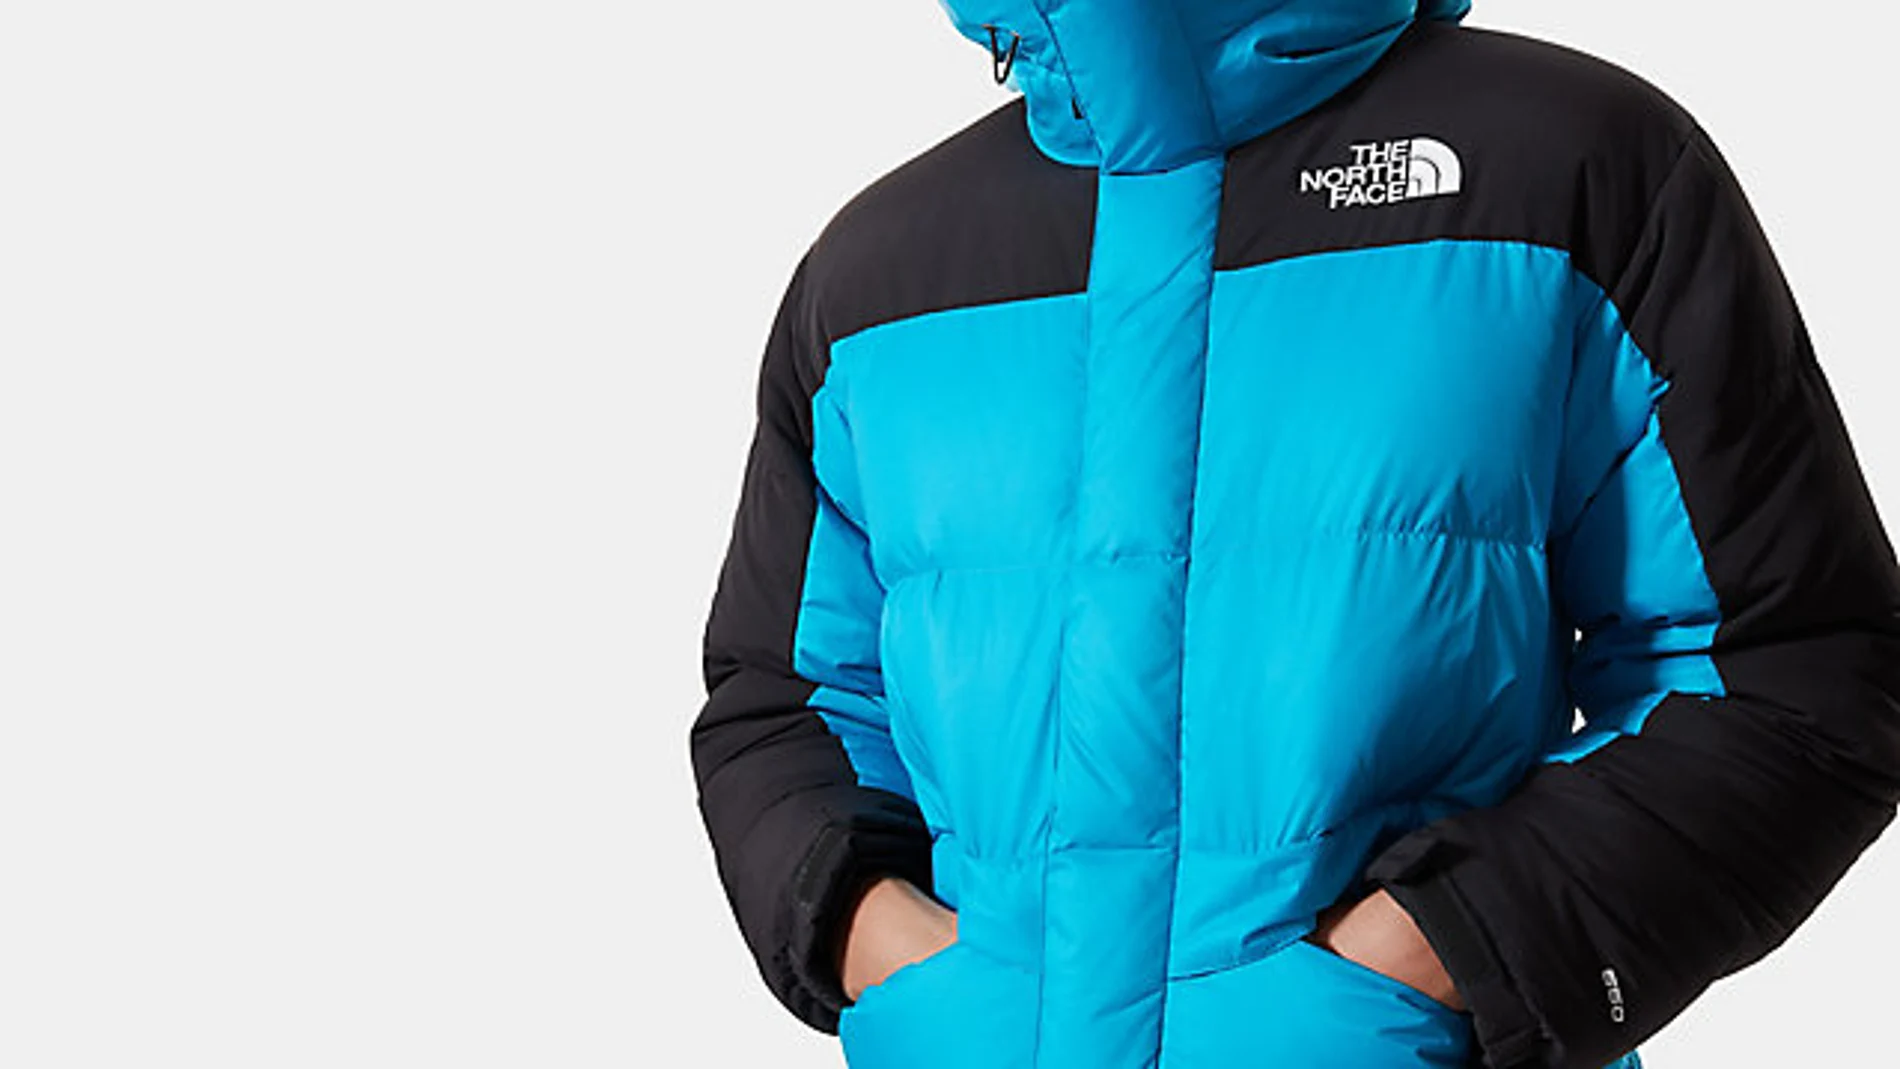 Las rebajas de North Face: el abrigo que siempre quisiste un 40% más barato